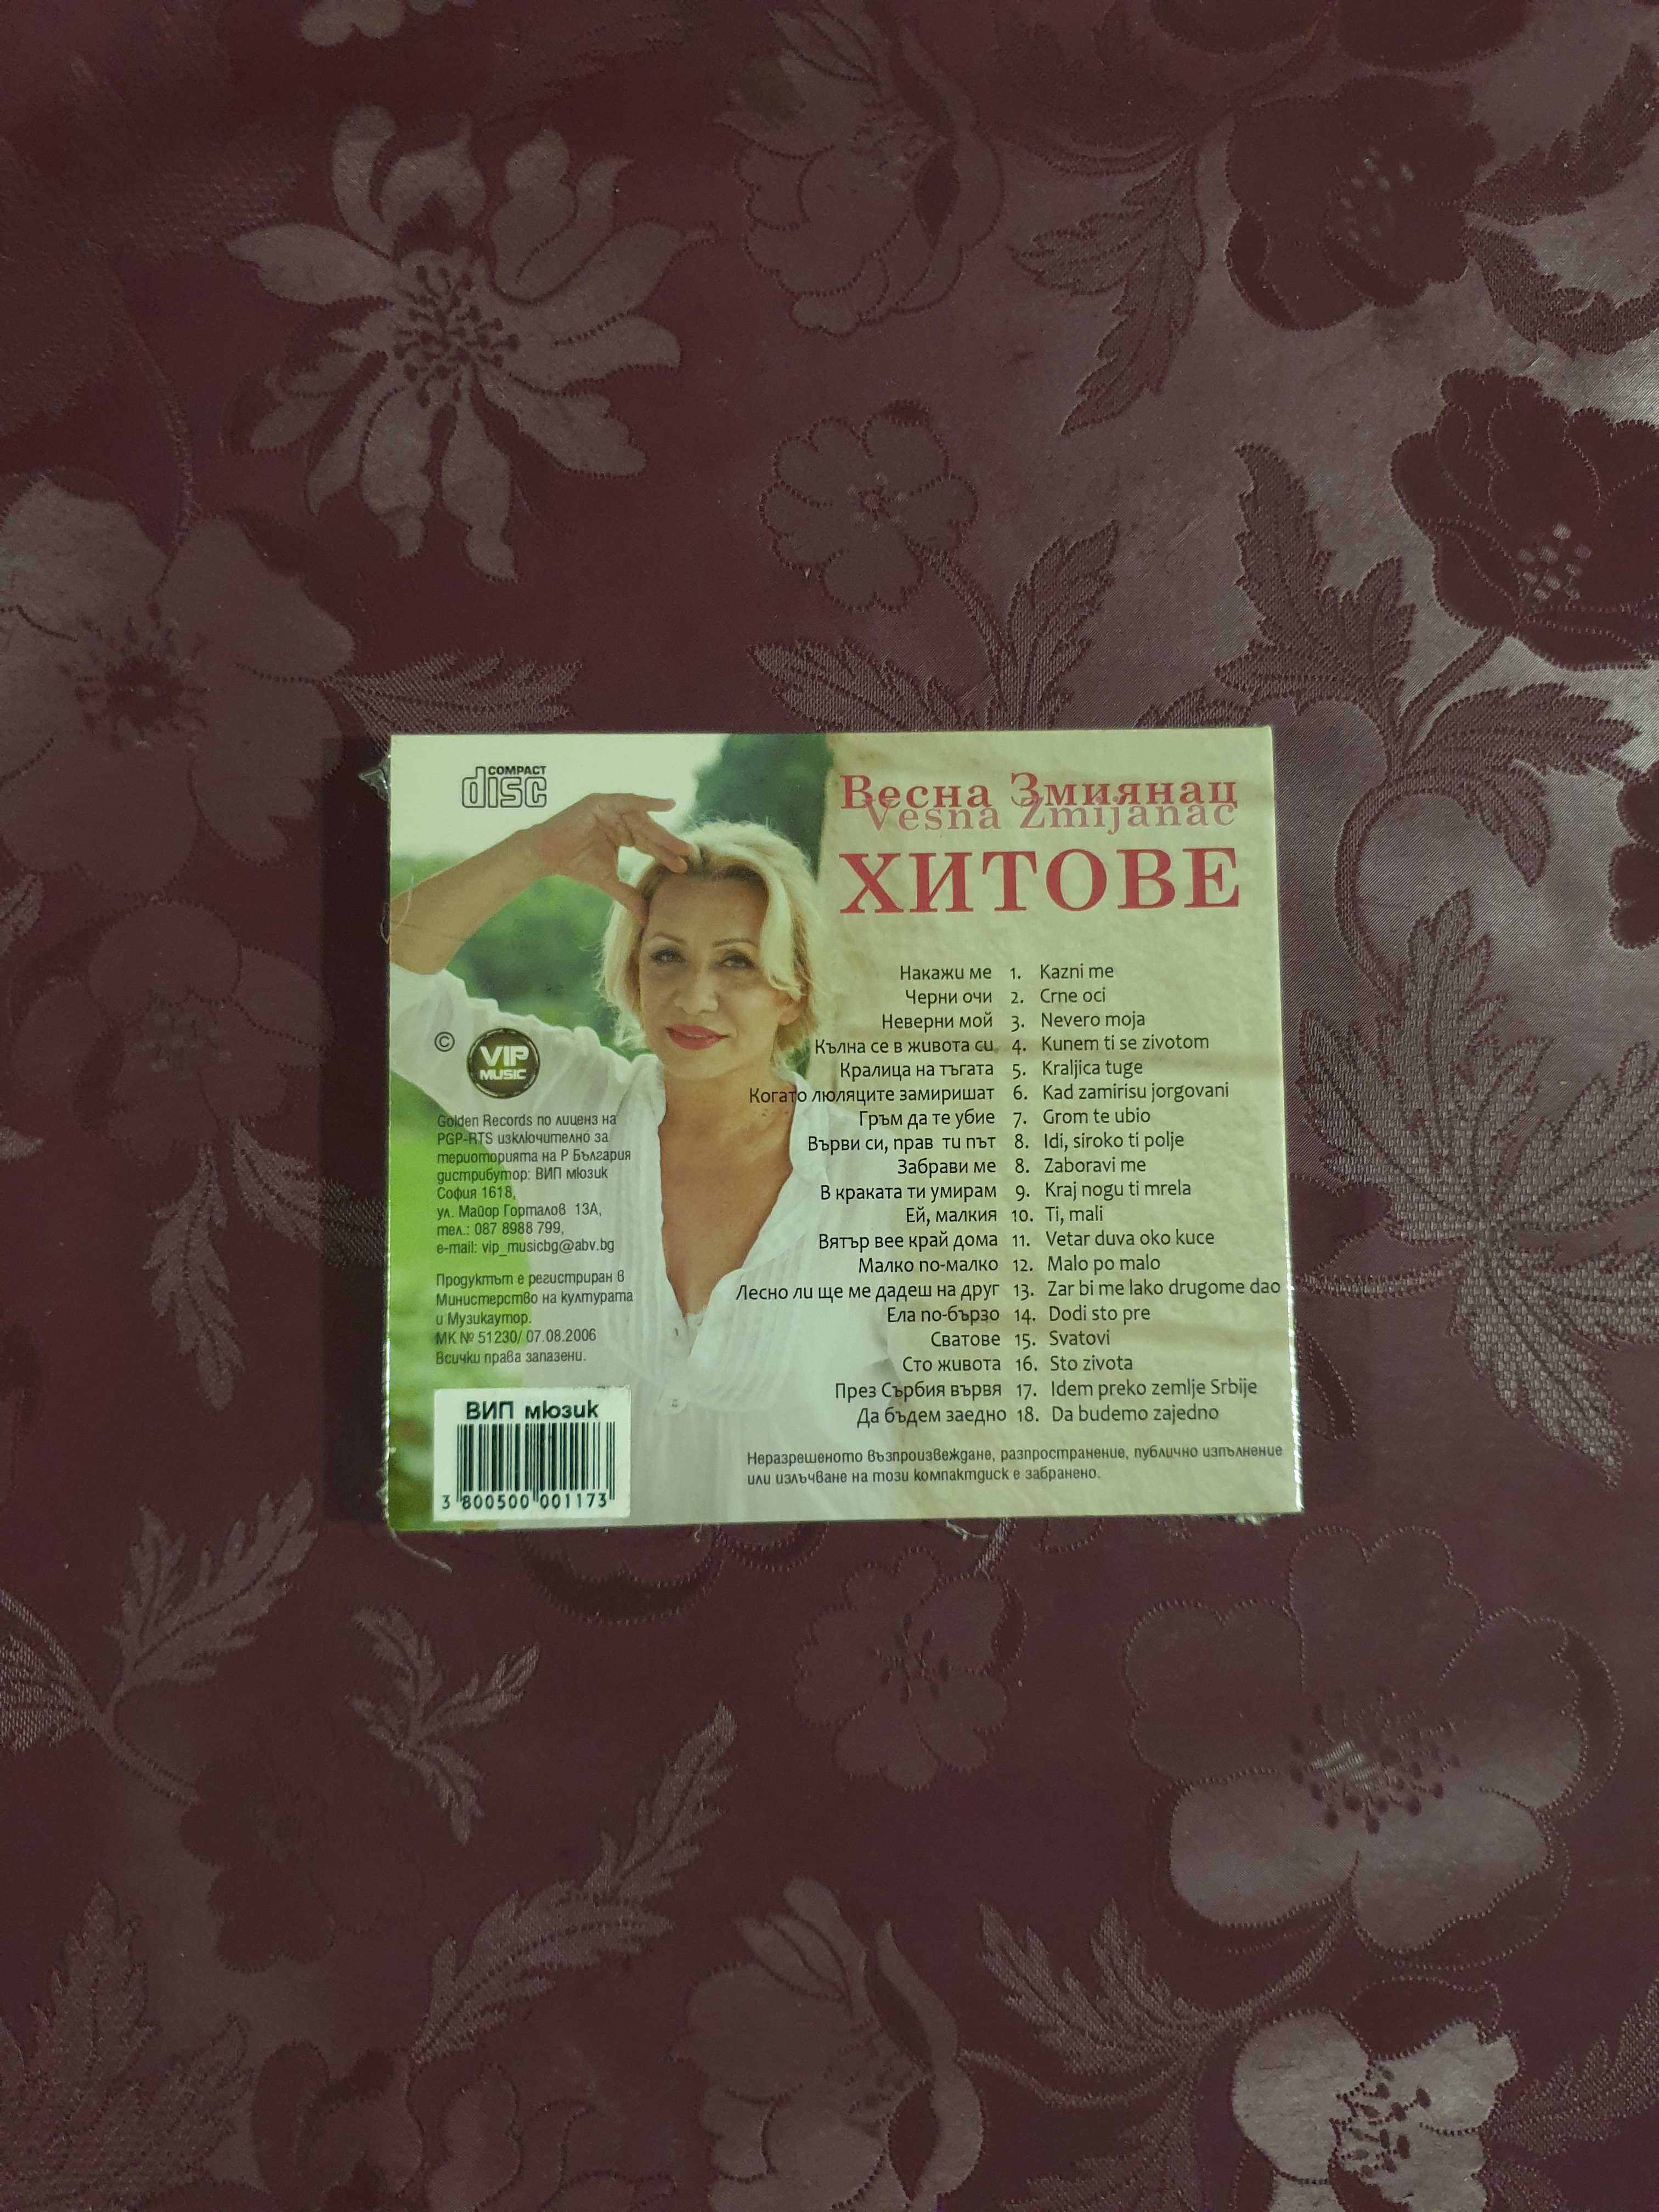 НОВИ CD - Хитови сръбски изпълнители